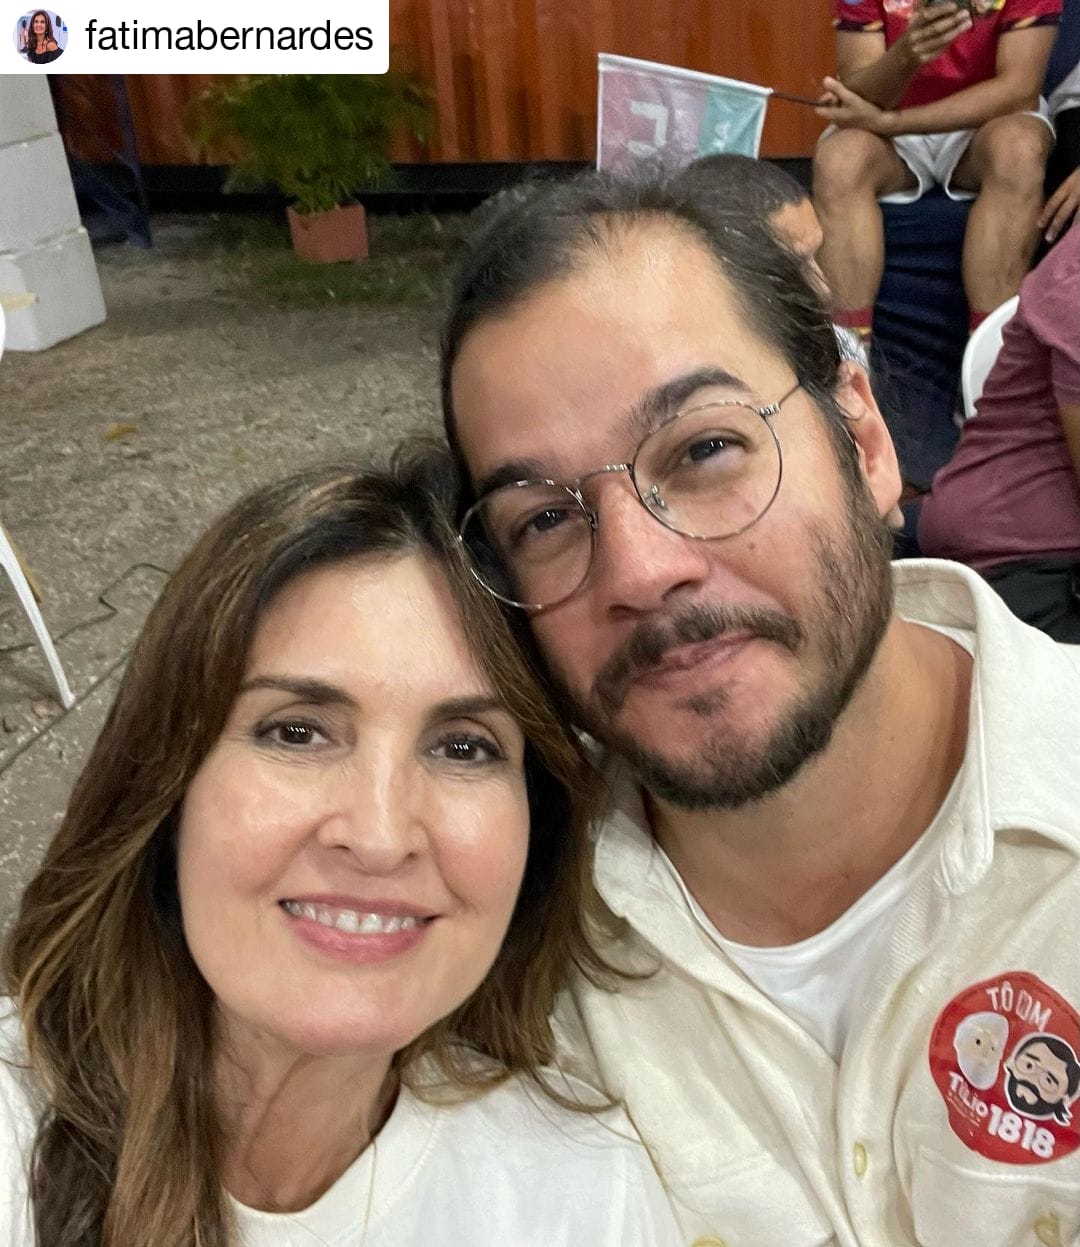 Fátima Bernardes e Túlio celebram 5 anos de romance e trocam declarações. Imagem: Reprodução/Instagram oficial da jornalista.